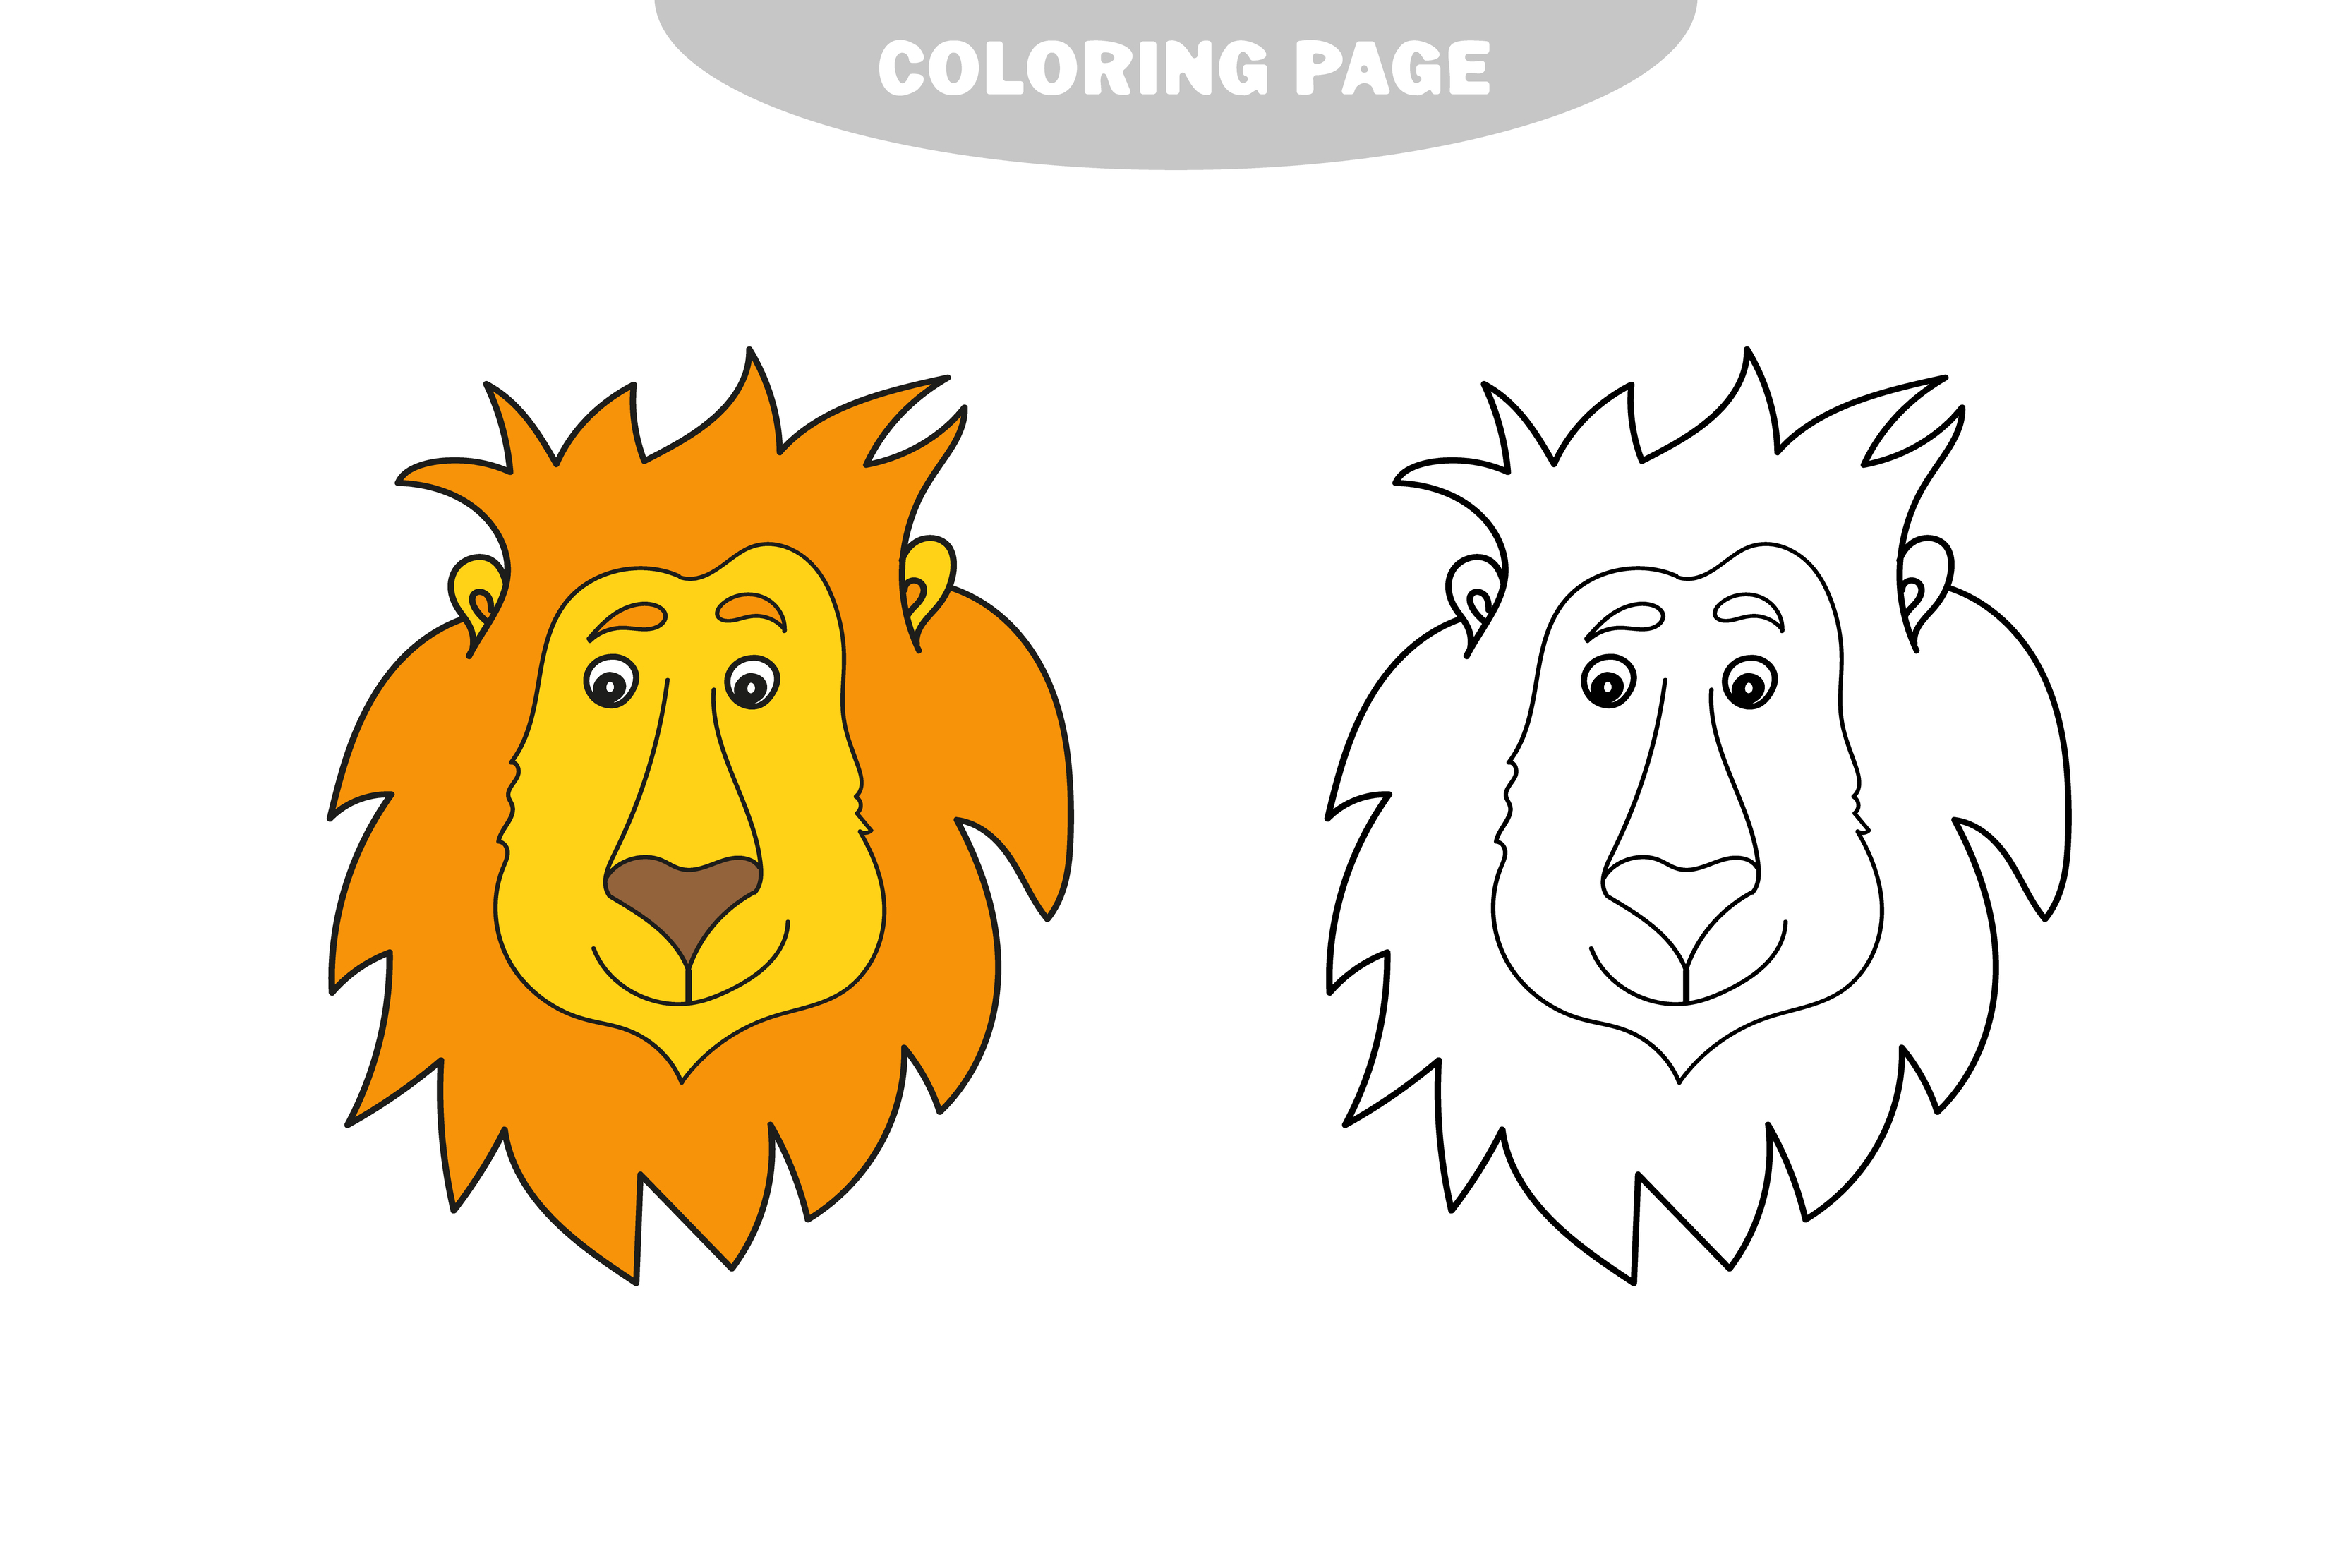 Livro de colorir ou desenho de página do leão bonito, jogo